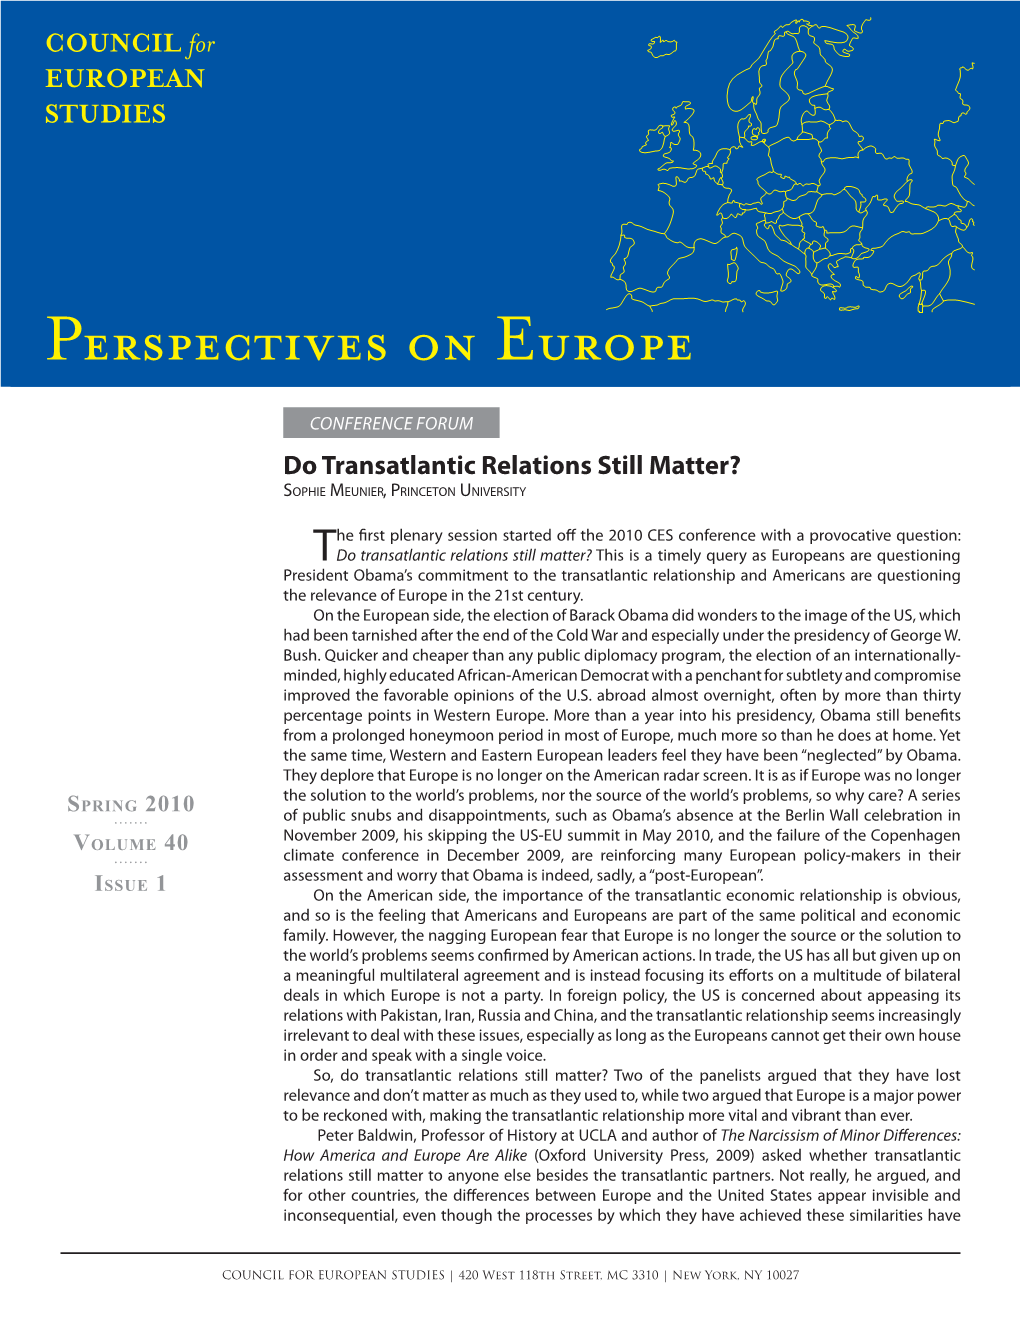 Do Transatlantic Relations Still Matter? SOPHIE MEUNIER, PRINCETON UNIVERSITY